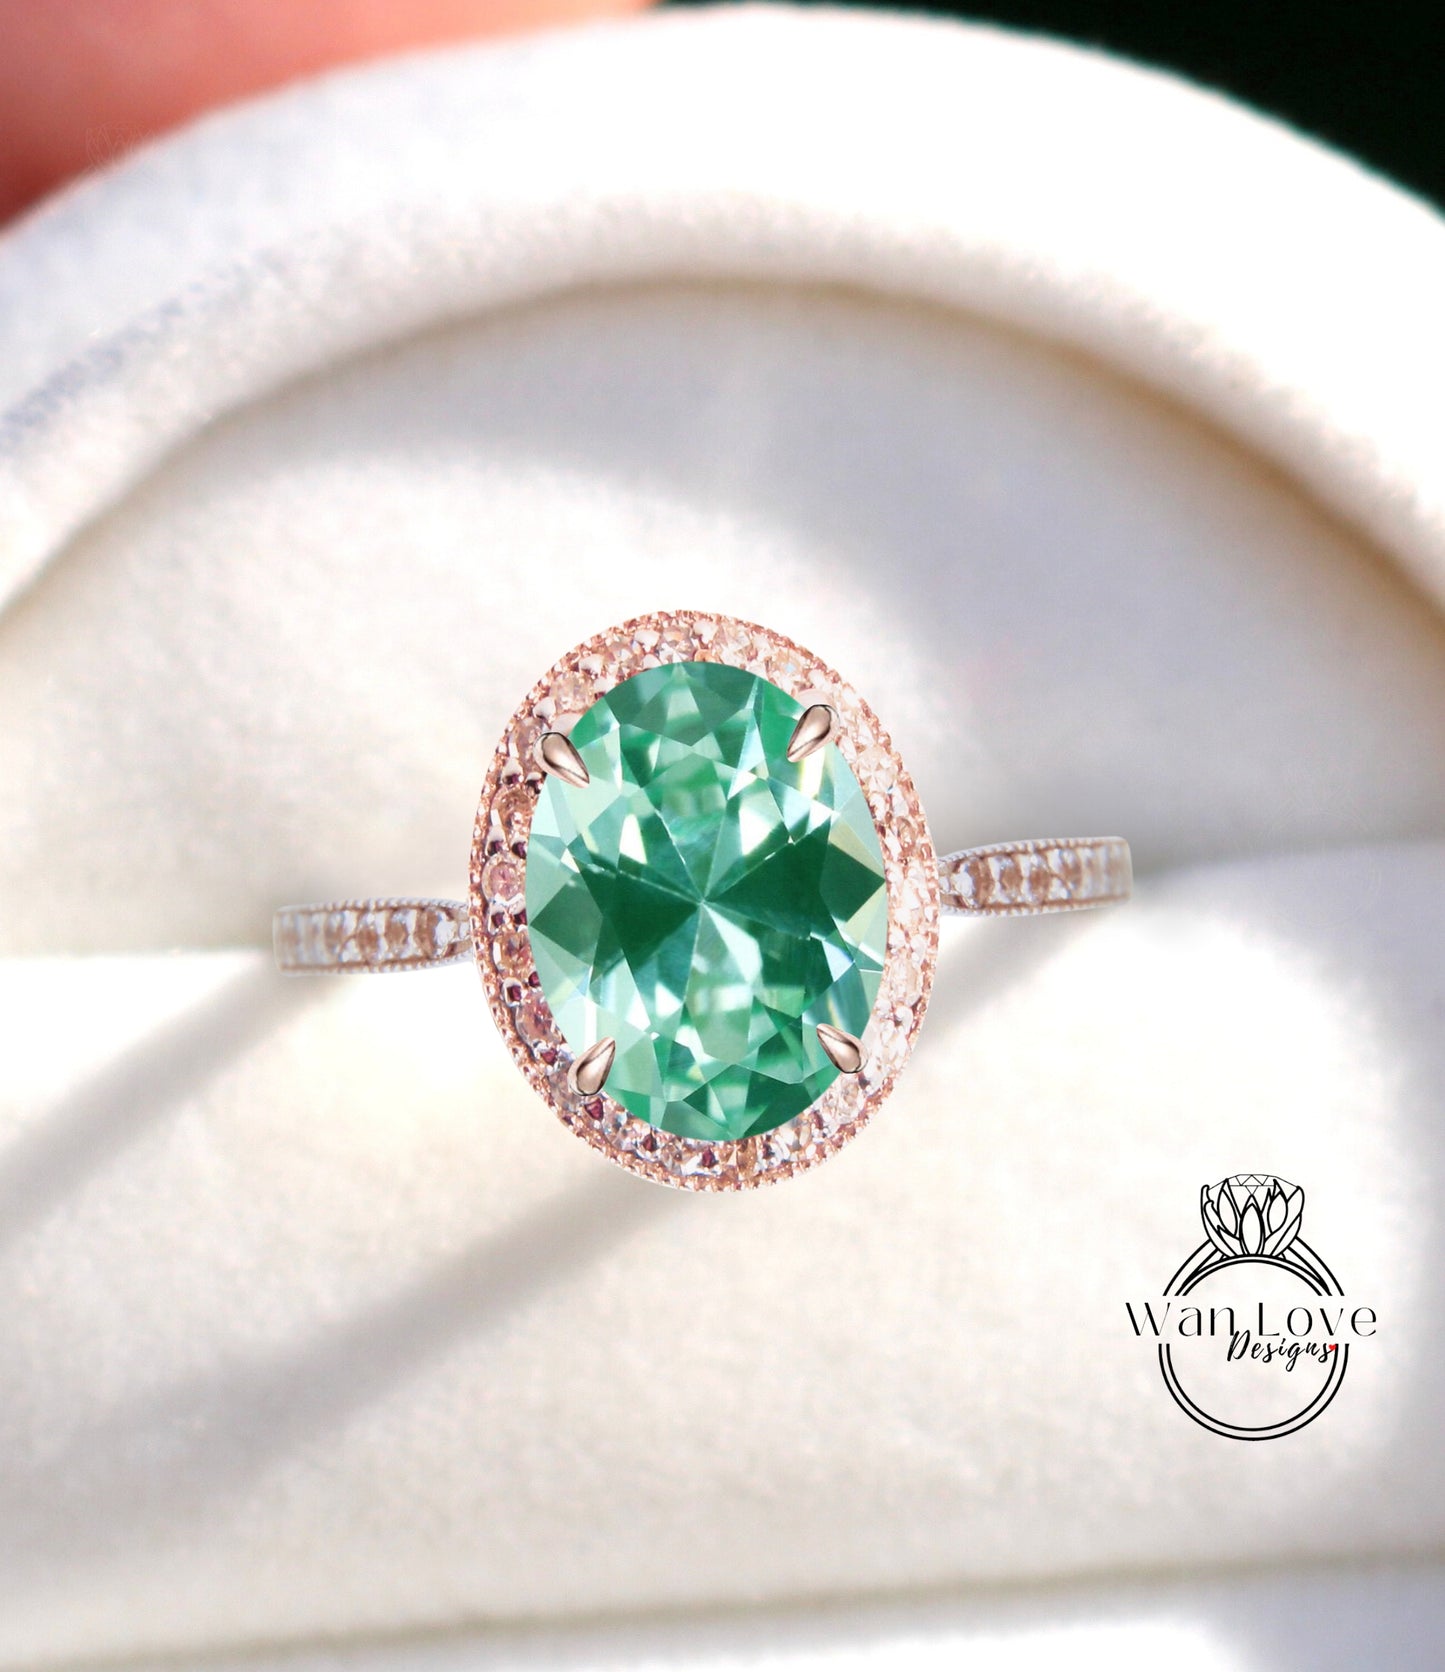 Anello di fidanzamento aureola ovale Teal Spinel Diamond 14k oro milgrain, anello di fidanzamento spinello verde blu, anello milgrain d'oro, ispirato vintage